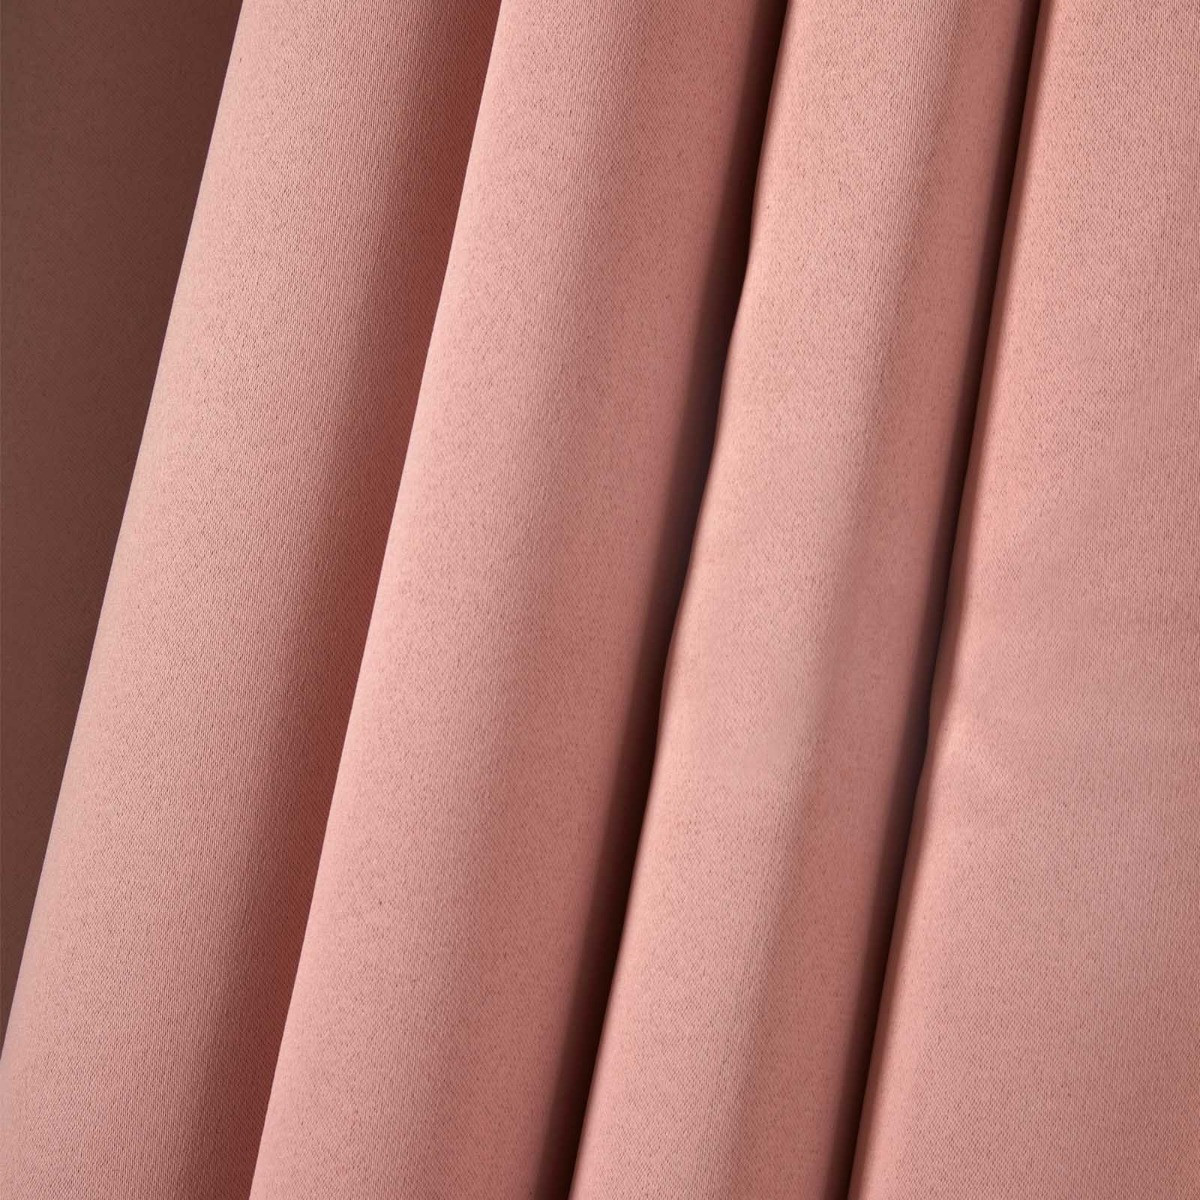 Dreamscene Pencil Pleat Blackout Curtains - Blush Pink, 66" x 72">